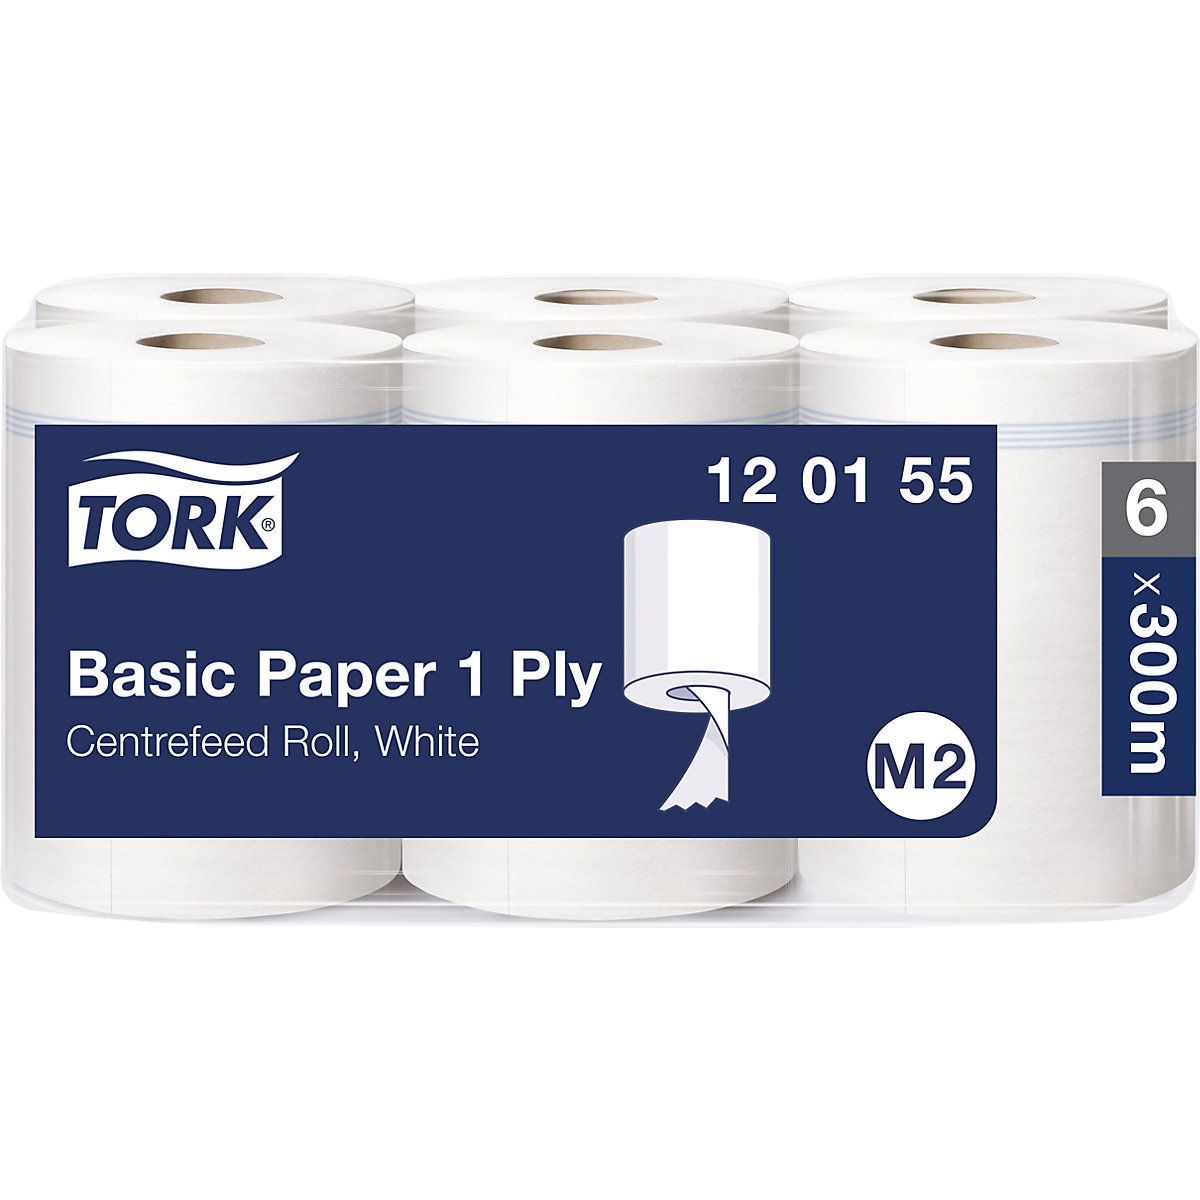 Standardowe ściereczki papierowe, centralne dozowanie – TORK